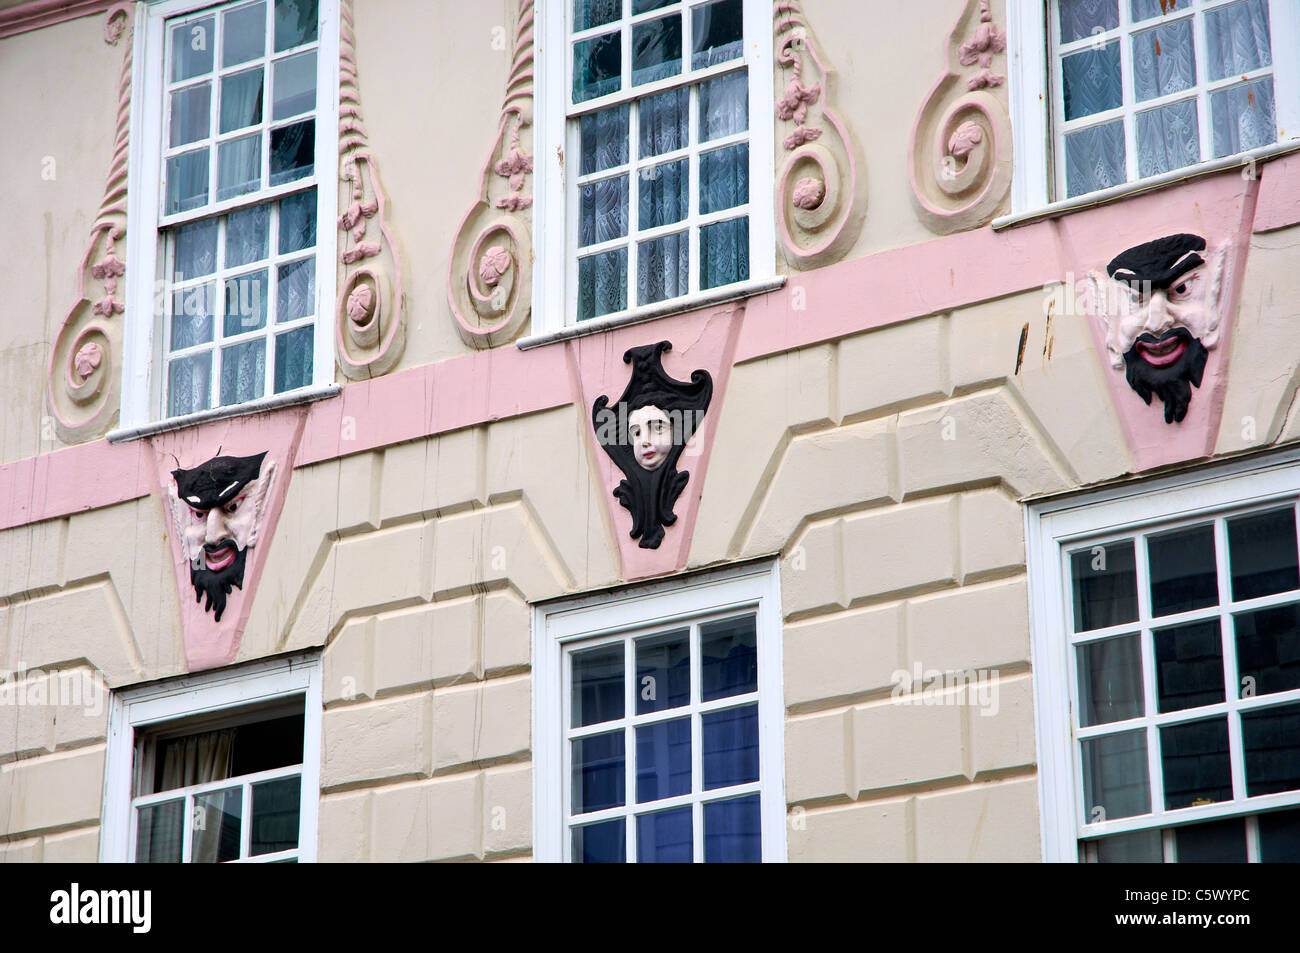 Edificio georgiano en Totnes, Devon, Inglaterra con elaborada decoración y estilo Máscara teatral pintado de caras. Foto de stock